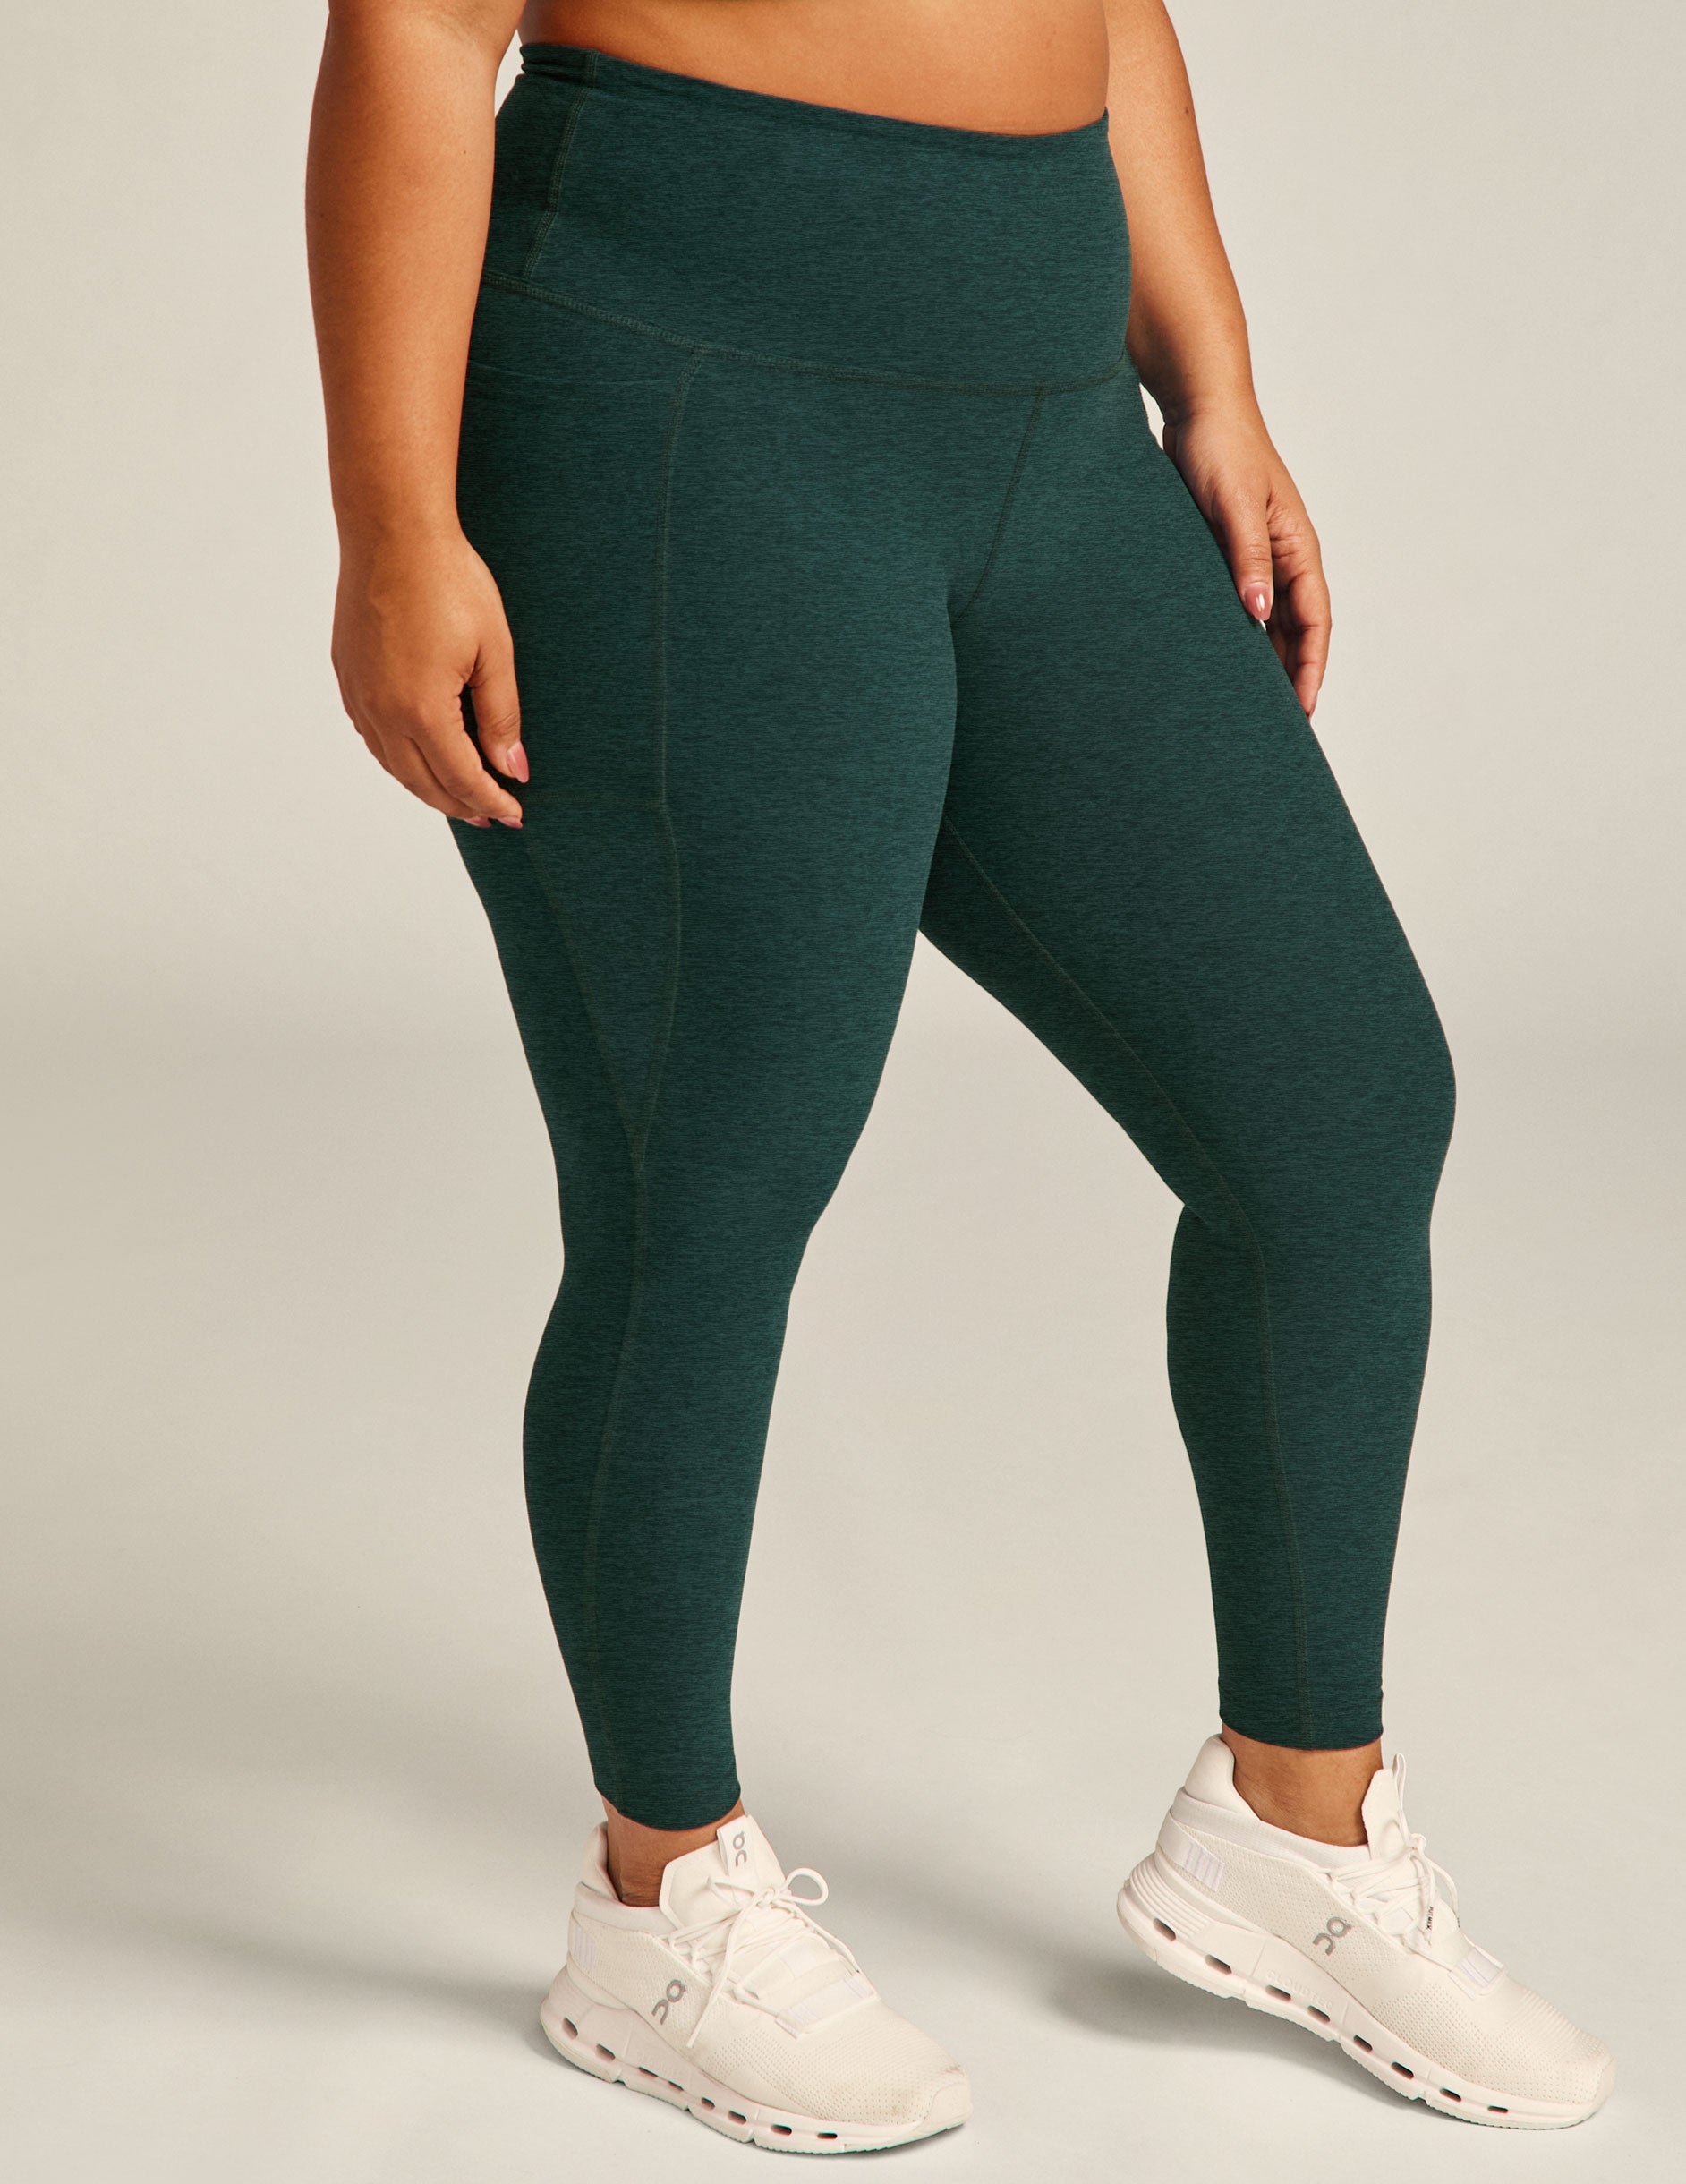 Beyond Yoga Gray Sweatpants Size XS - 60% off